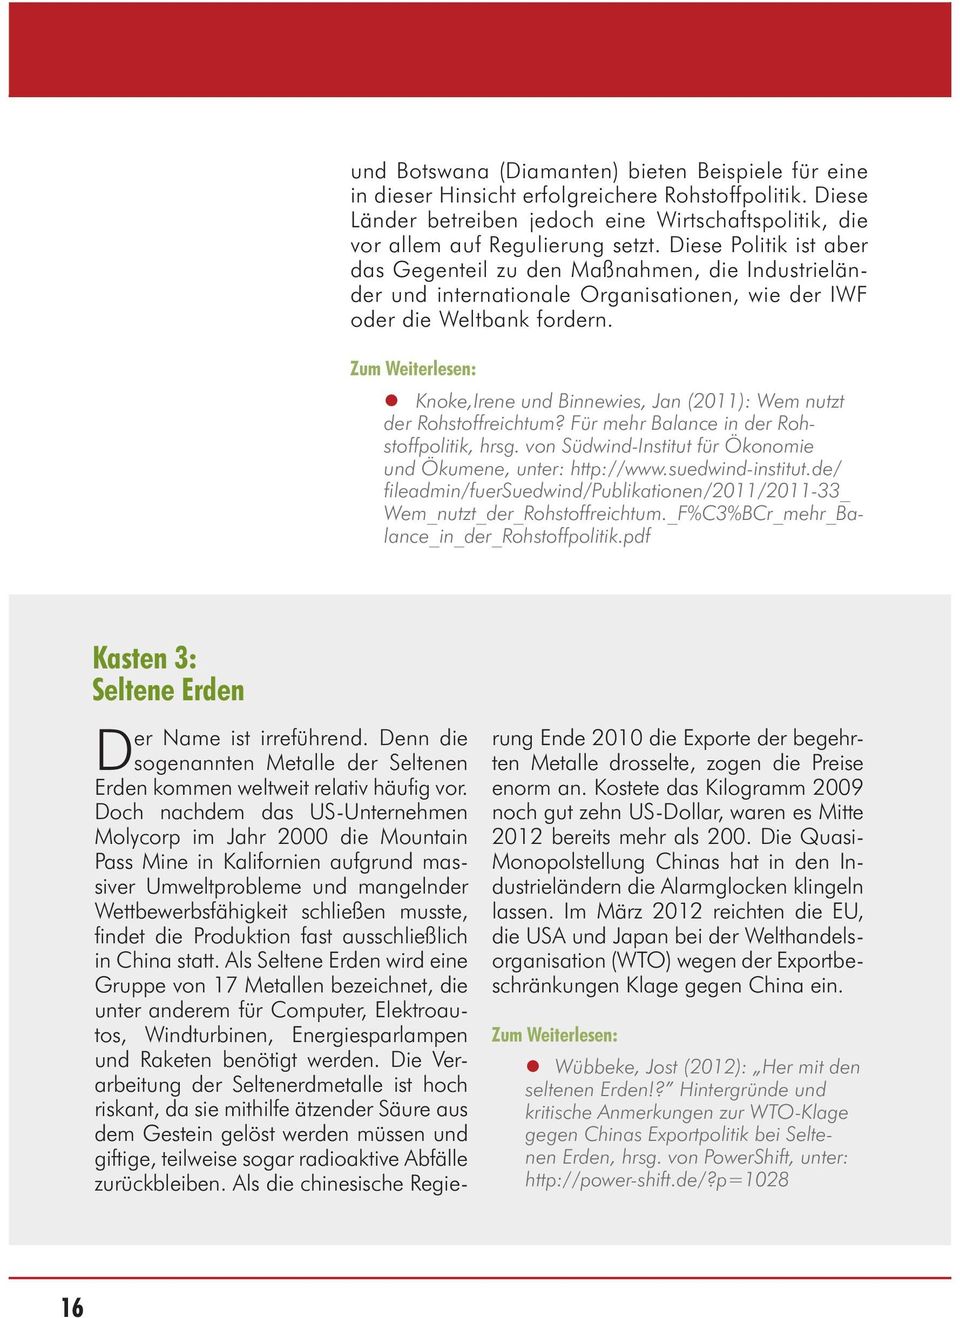 Knoke,Irene und Binnewies, Jan (2011): Wem nutzt der Rohstoffreichtum? Für mehr Balance in der Rohstoffpolitik, hrsg. von Südwind-Institut für Ökonomie und Ökumene, unter: http://www.